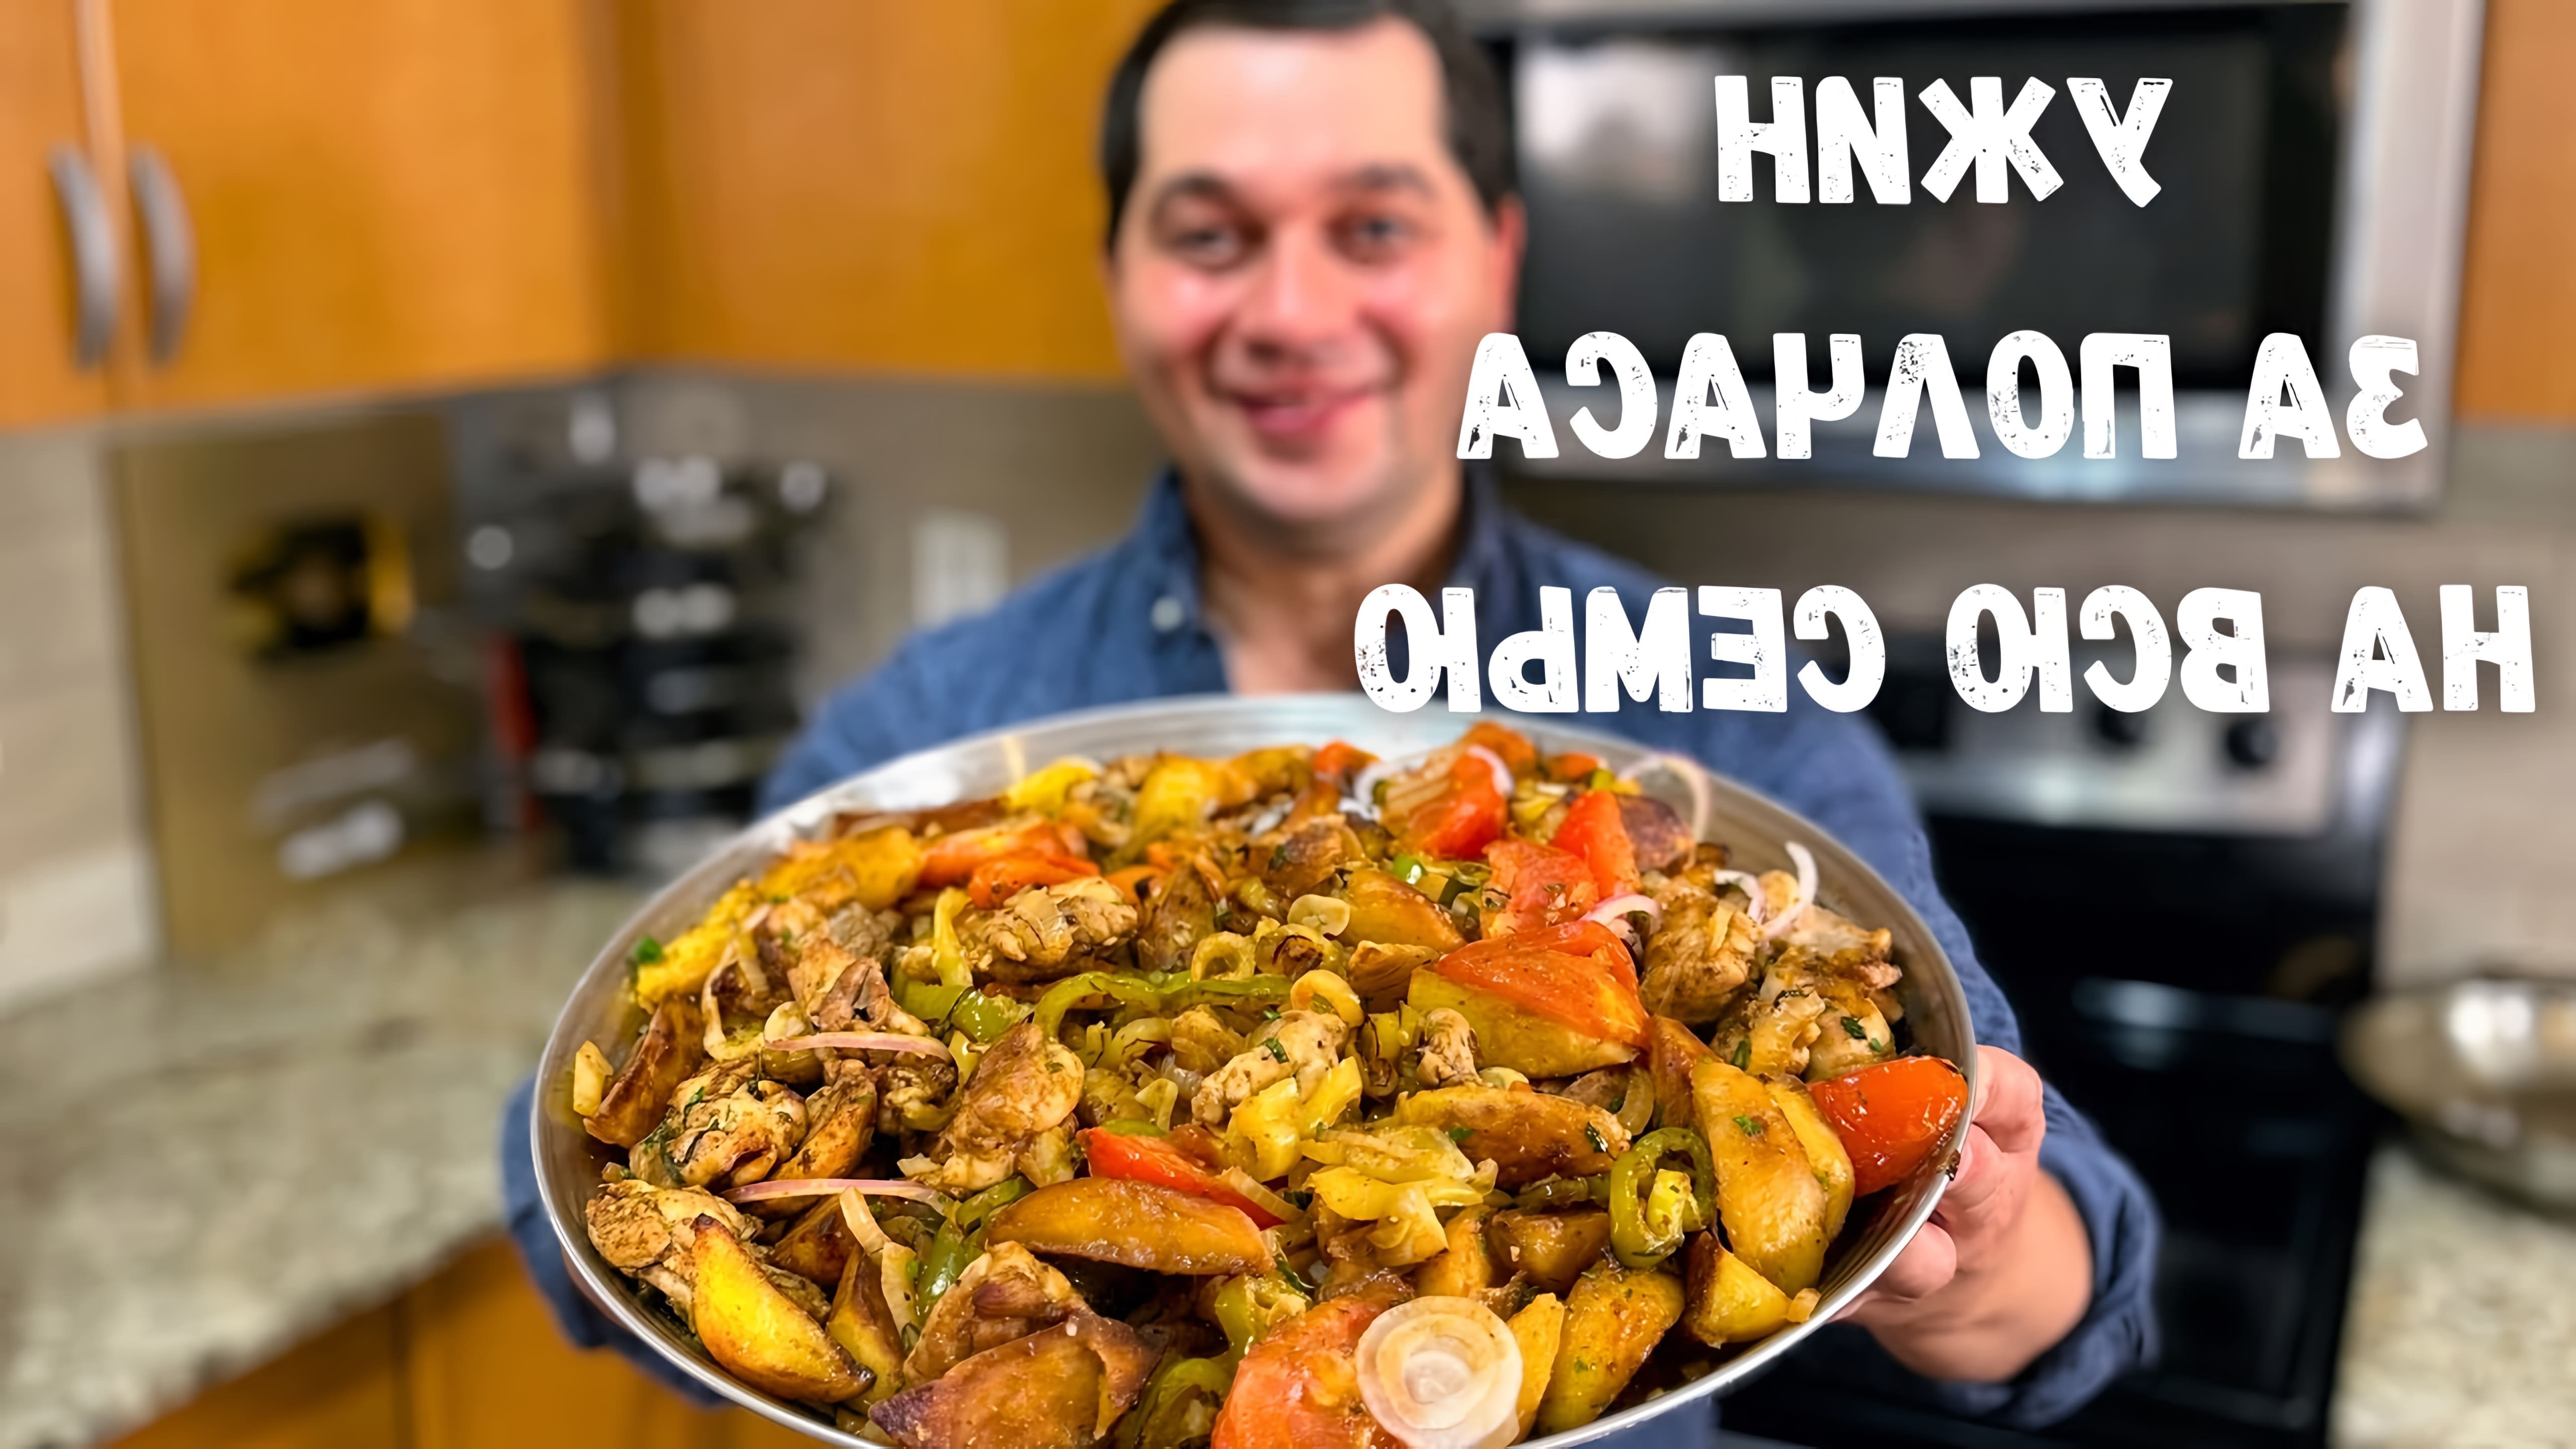 Видео как приготовить оджахури - грузинское блюдо из мяса и картофеля, жаренных вместе на сковороде